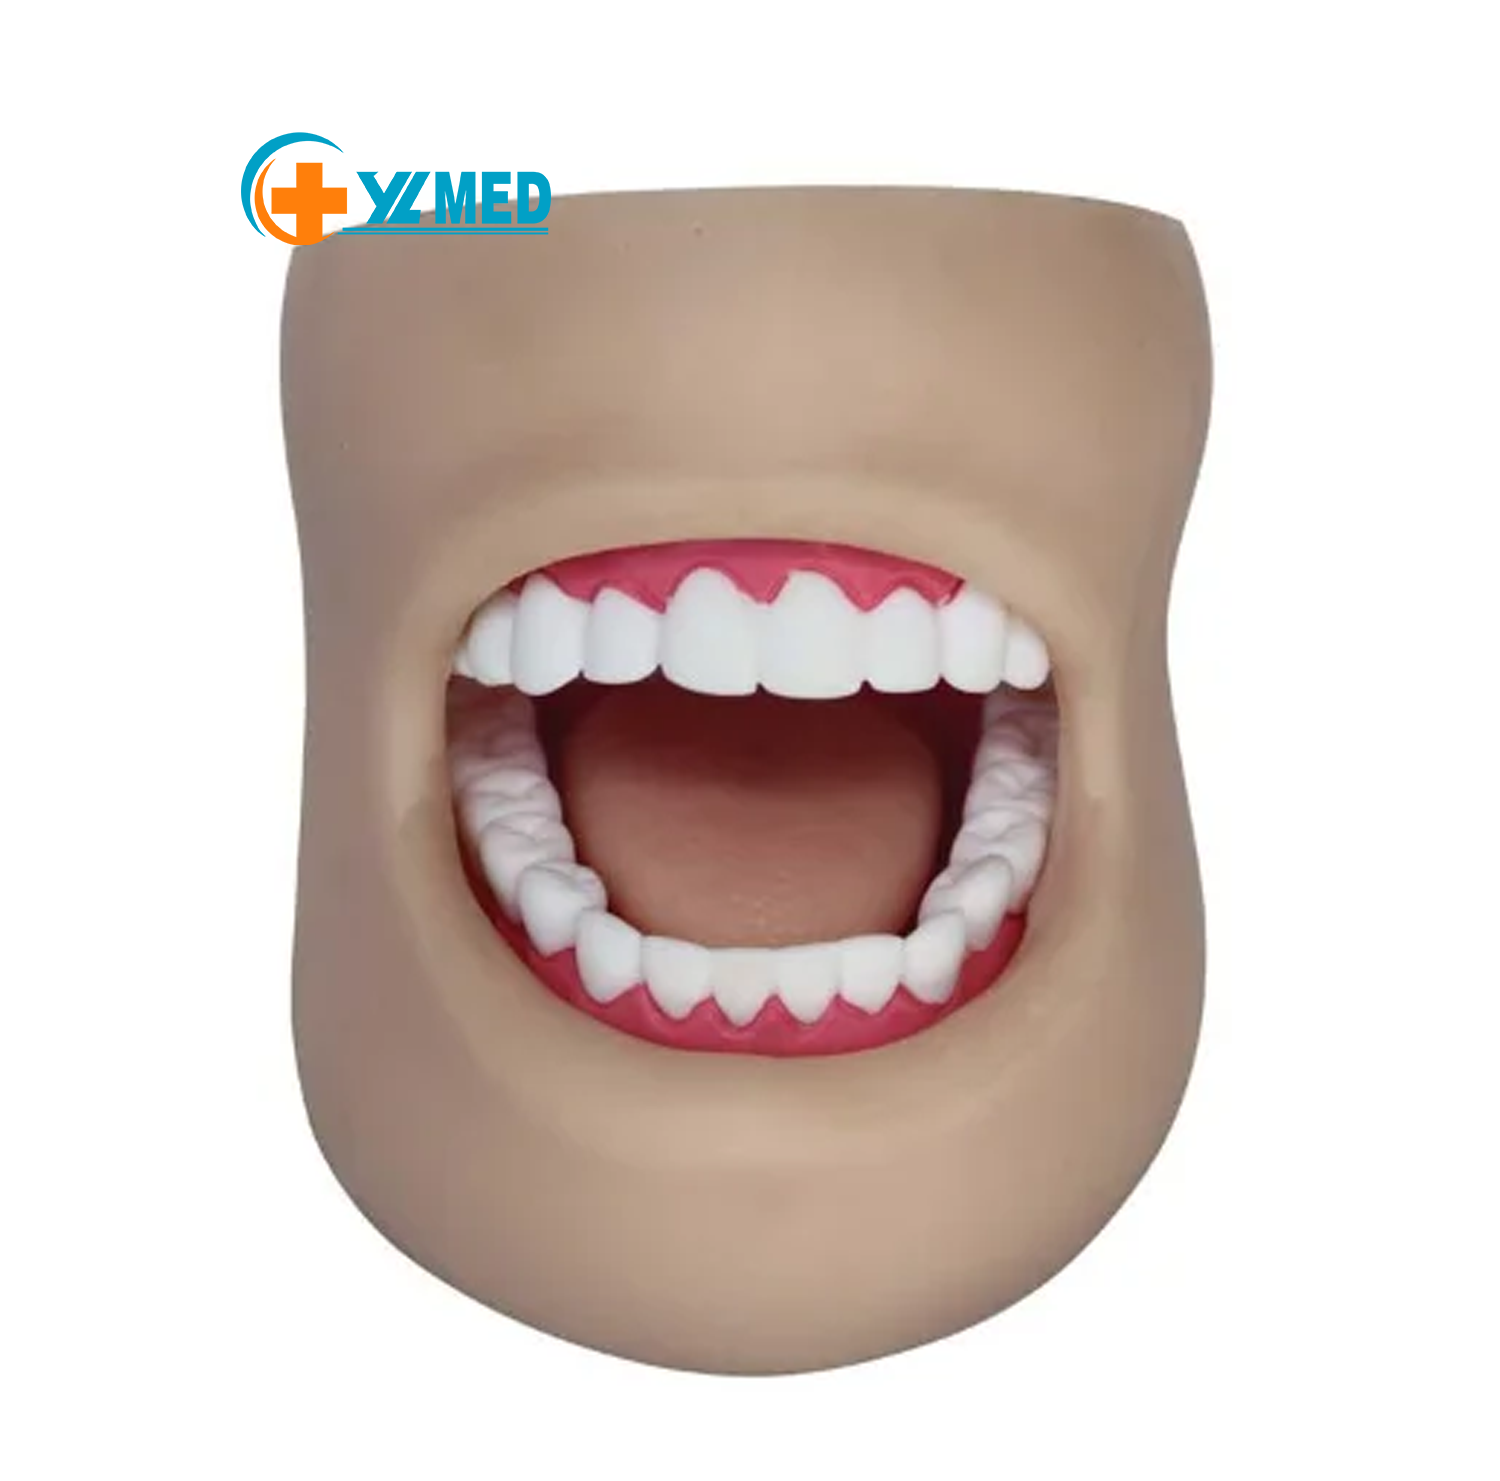 Mondeling onderwijs Tandheelkundig model Mondgezondheidseducatie klaslokaalpraktijkmodel tandmodel met 28 tanden en wangen